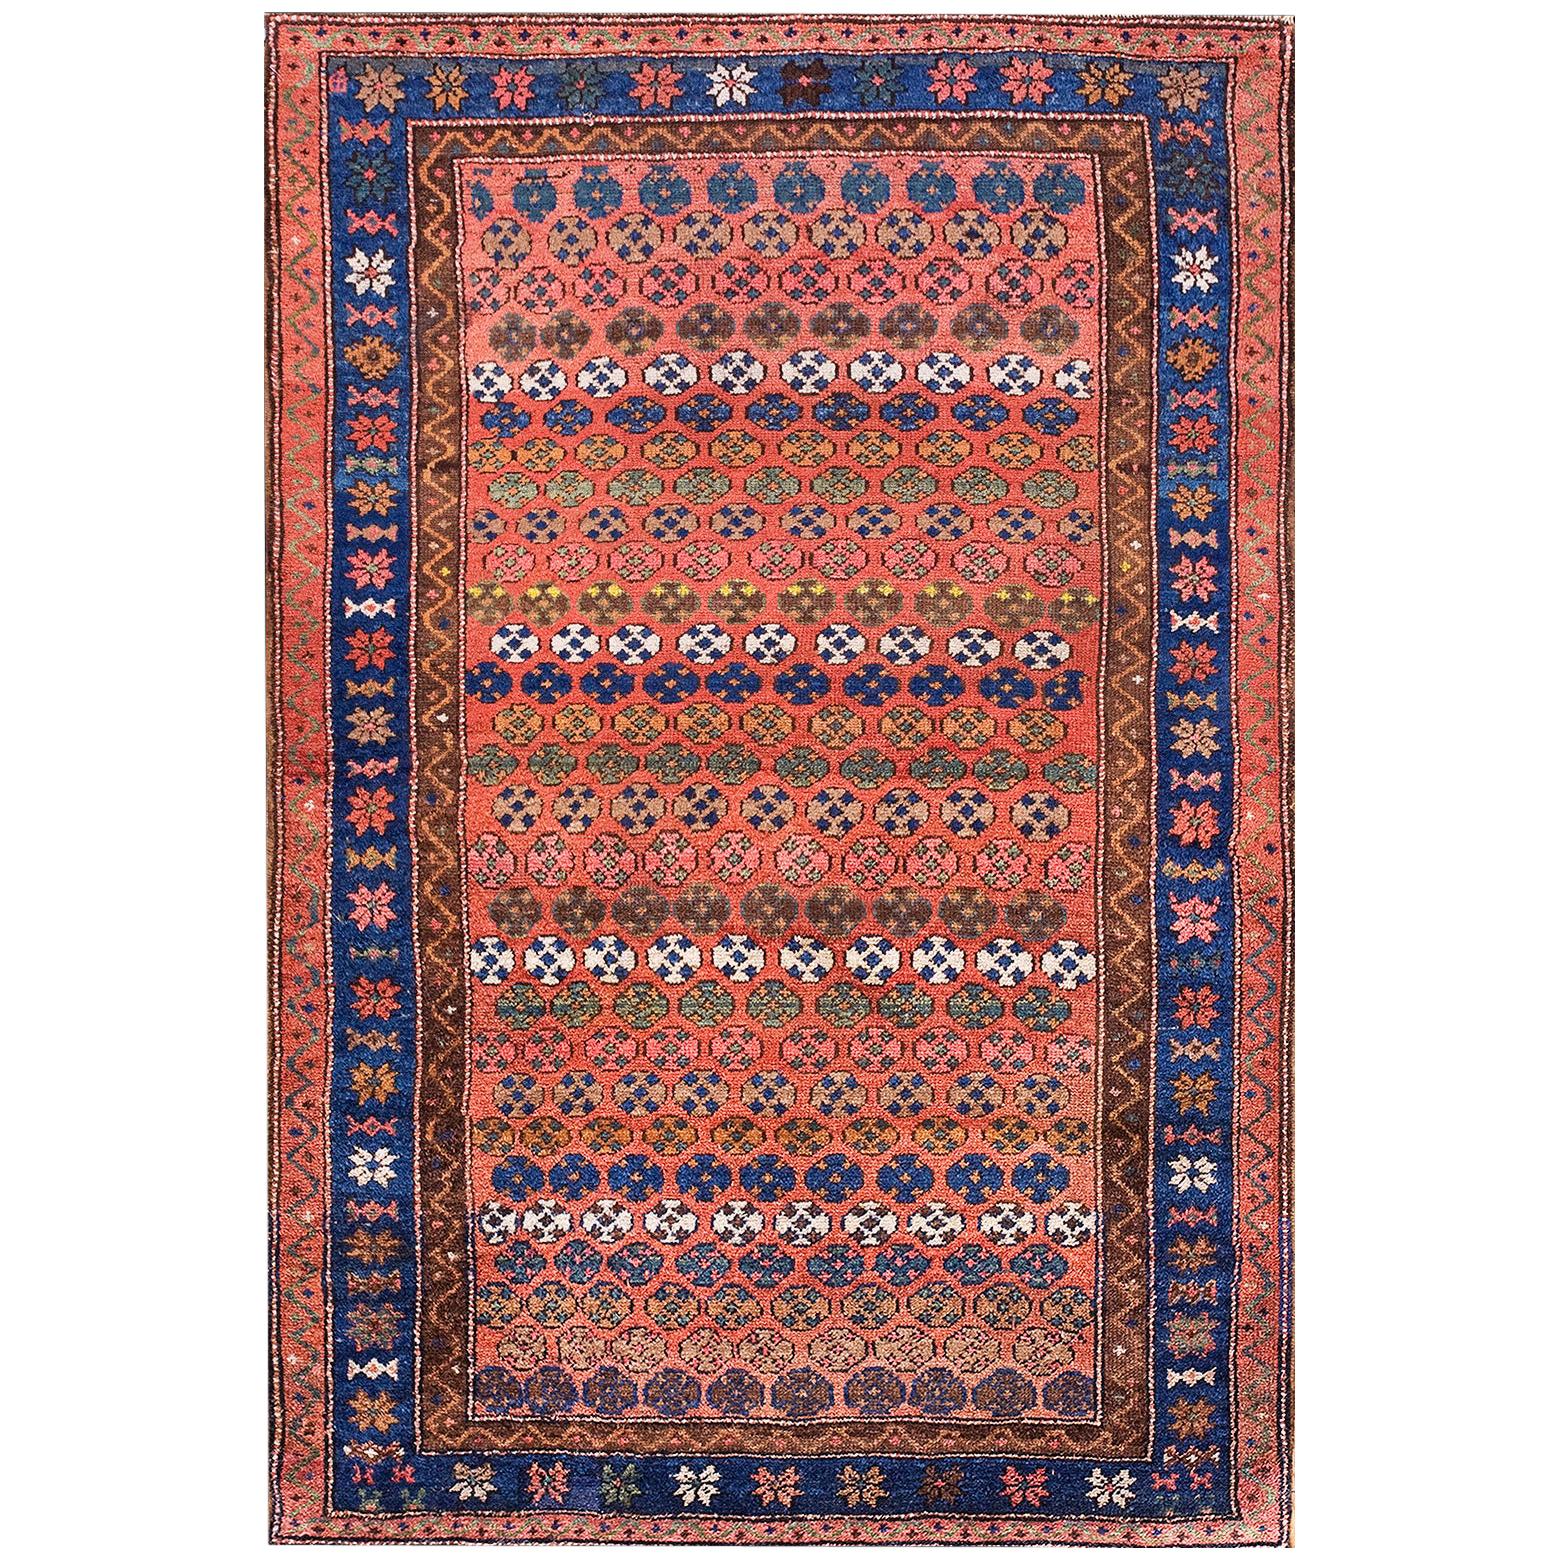 19. Jahrhundert N.W. Persischer Teppich ( 3'10" x 5'10" - 117 x 178)